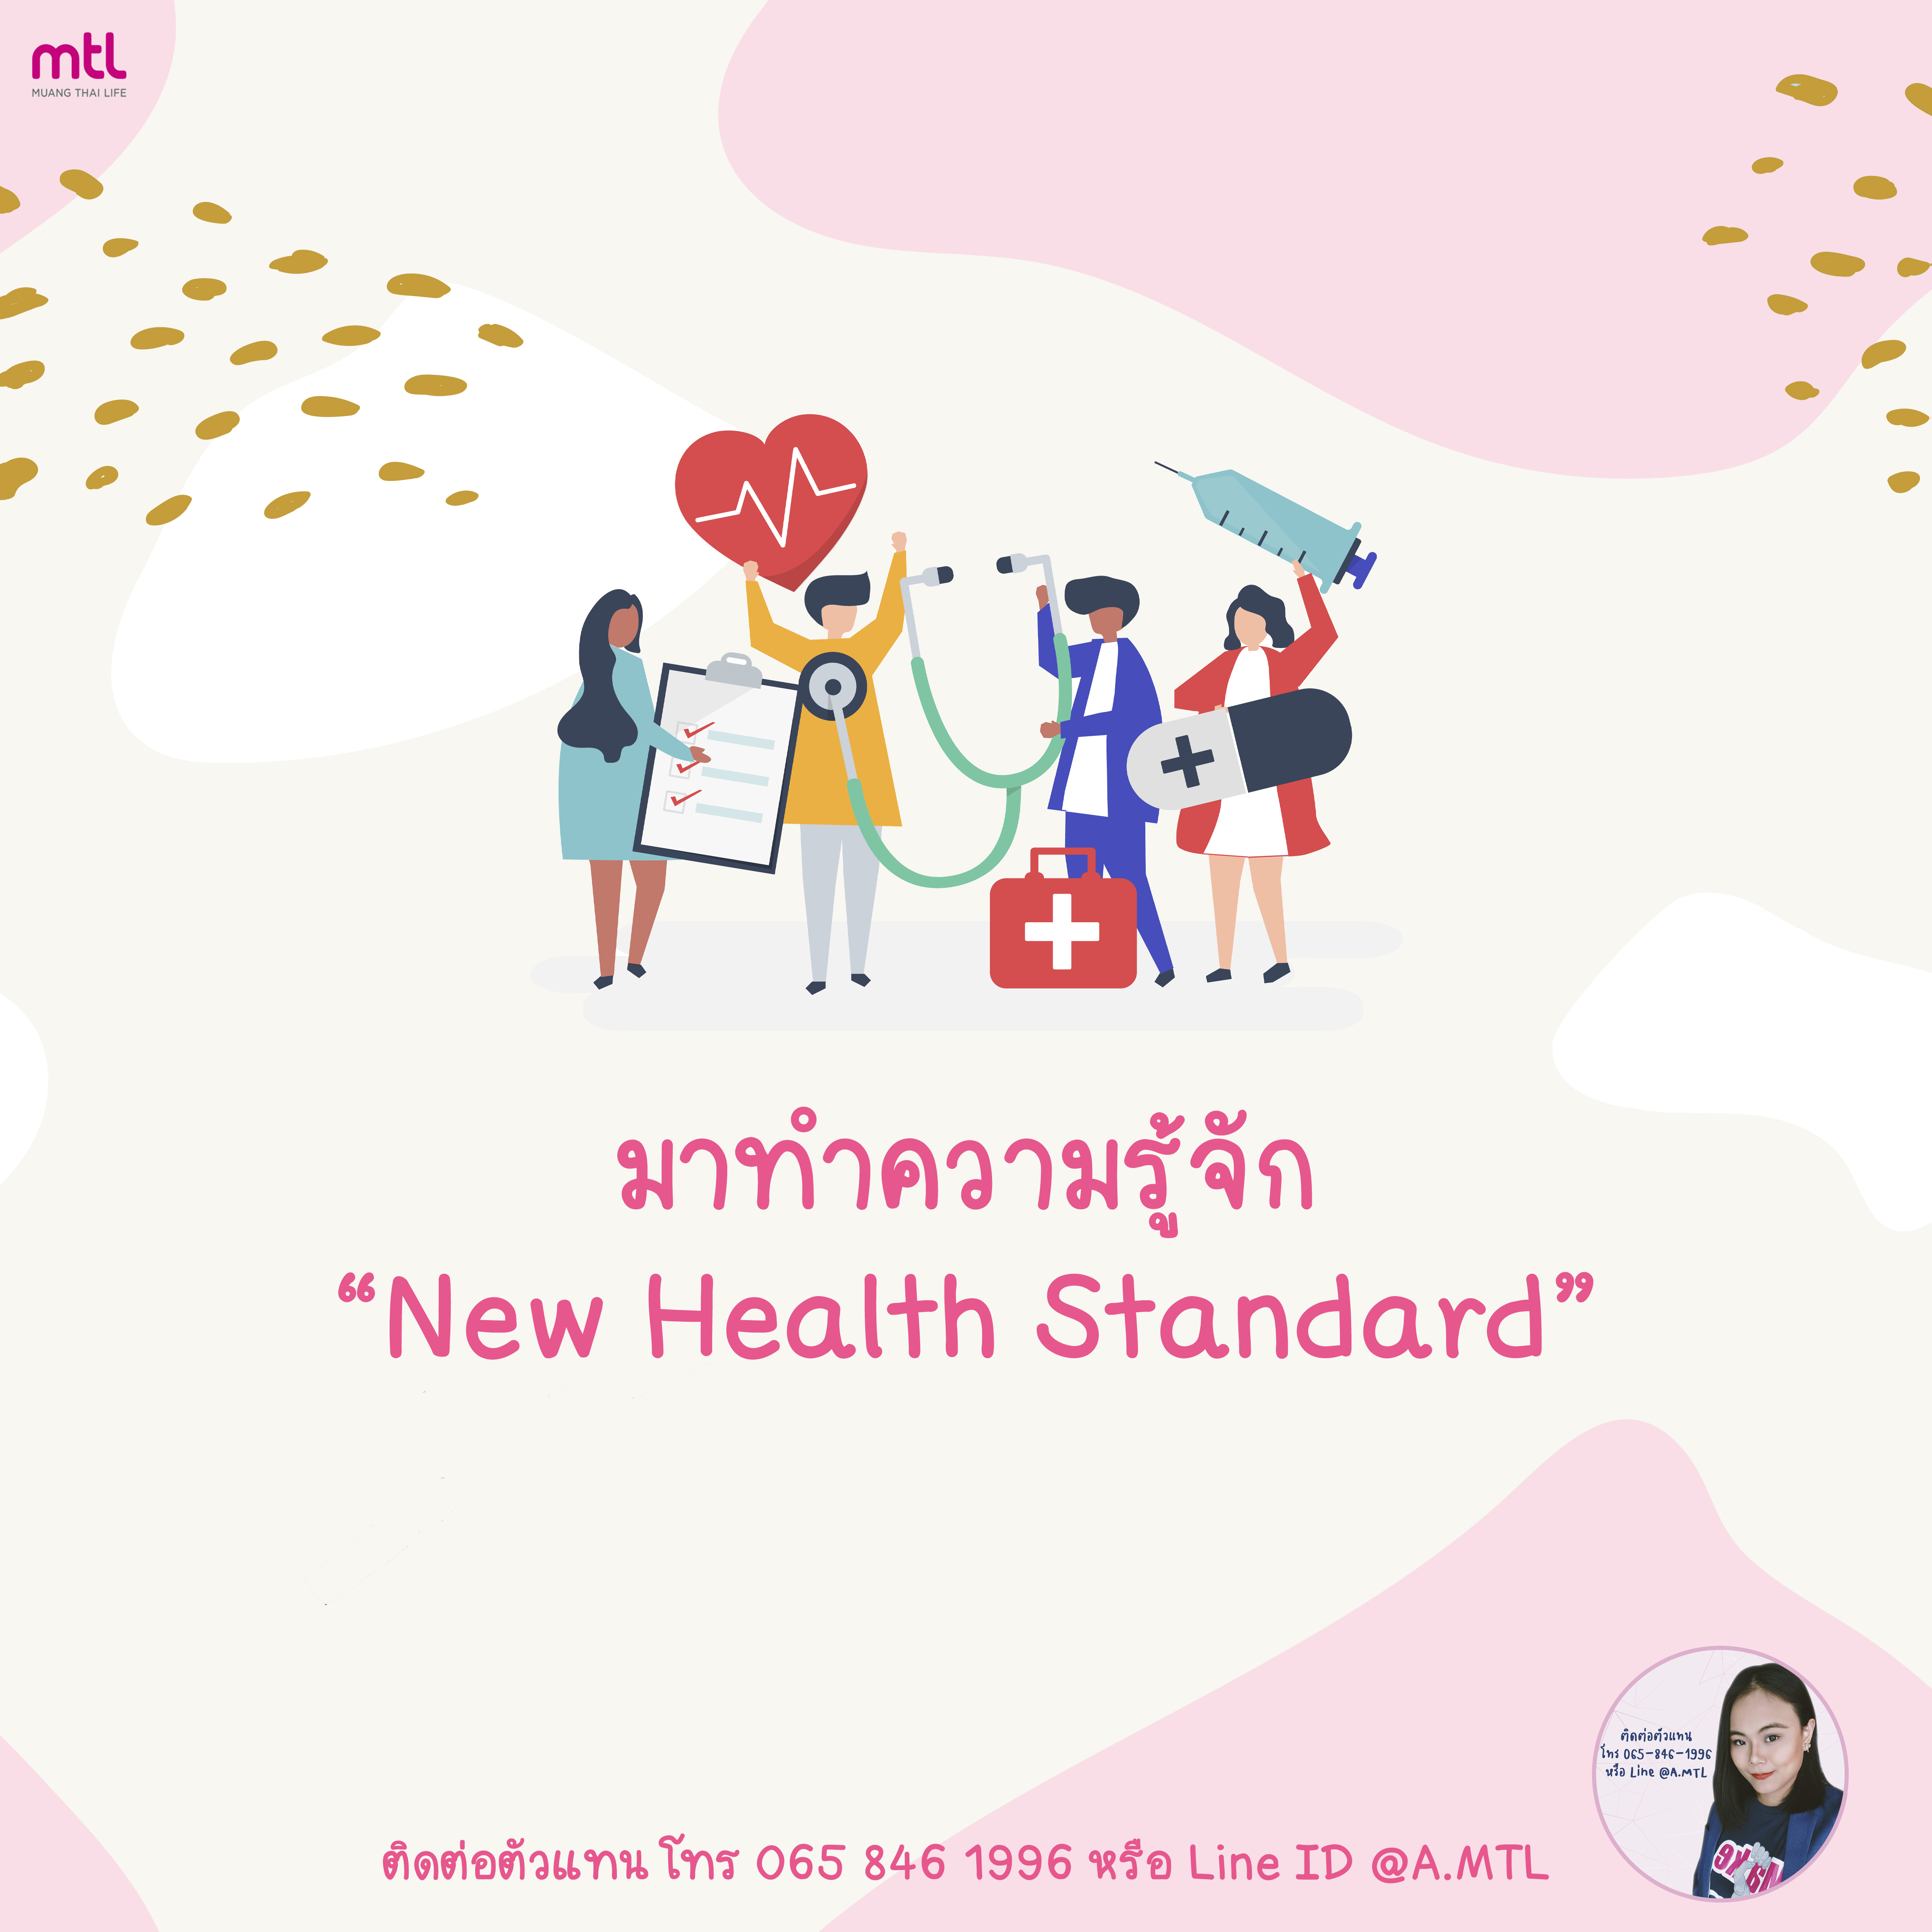 New Health Standard - มาตรฐานประกันสุขภาพใหม่